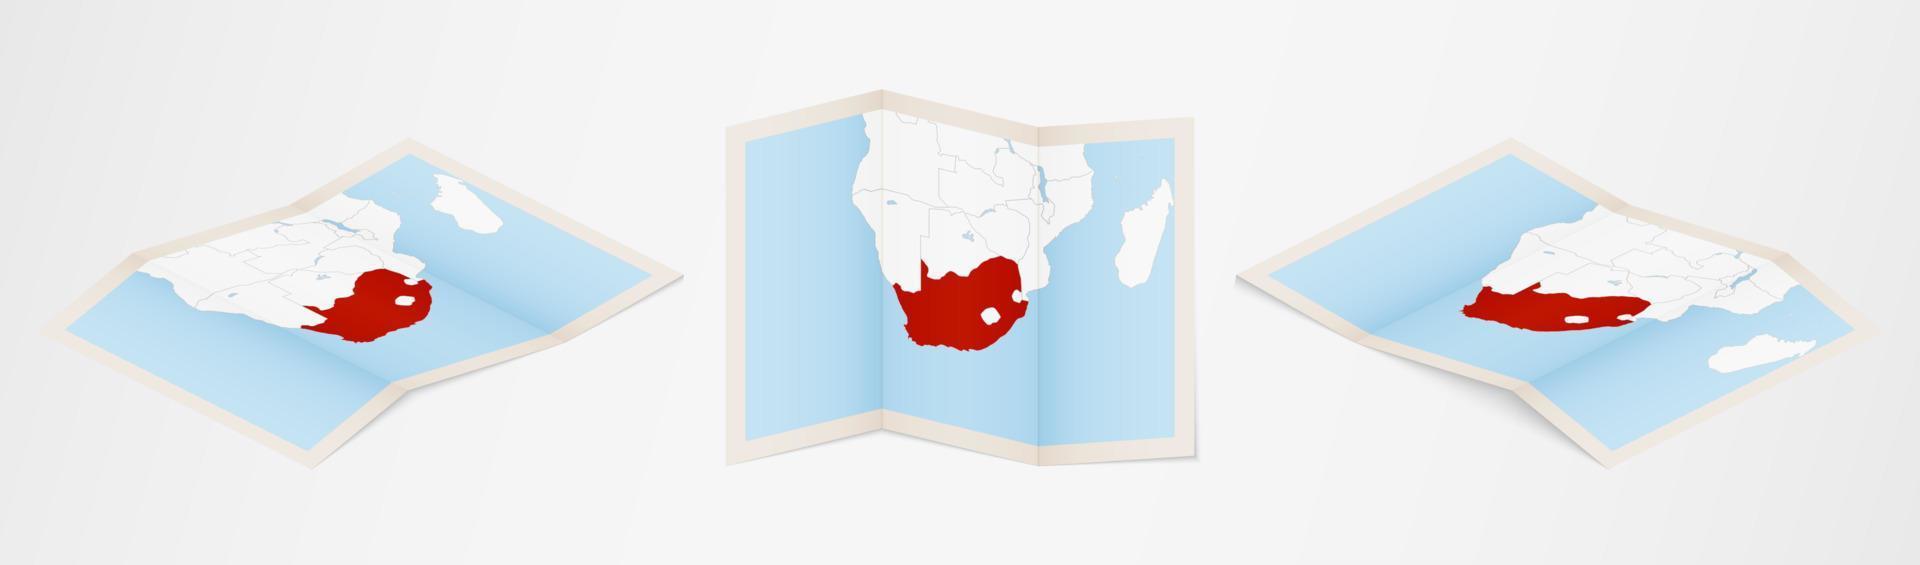 mapa dobrado da áfrica do sul em três versões diferentes. vetor